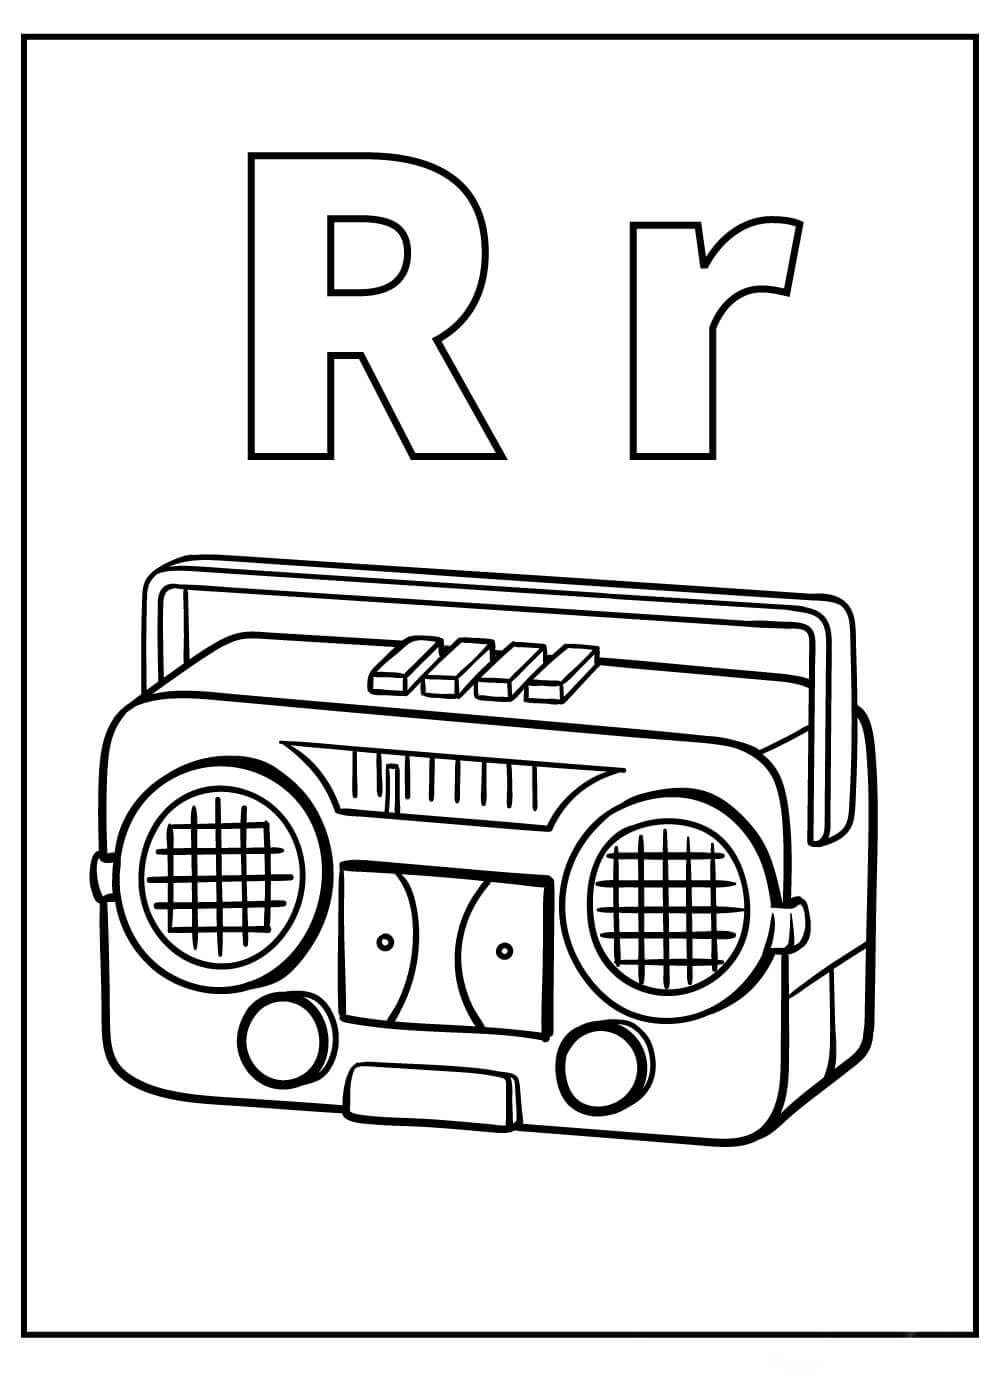 Letra R e Radio para colorir